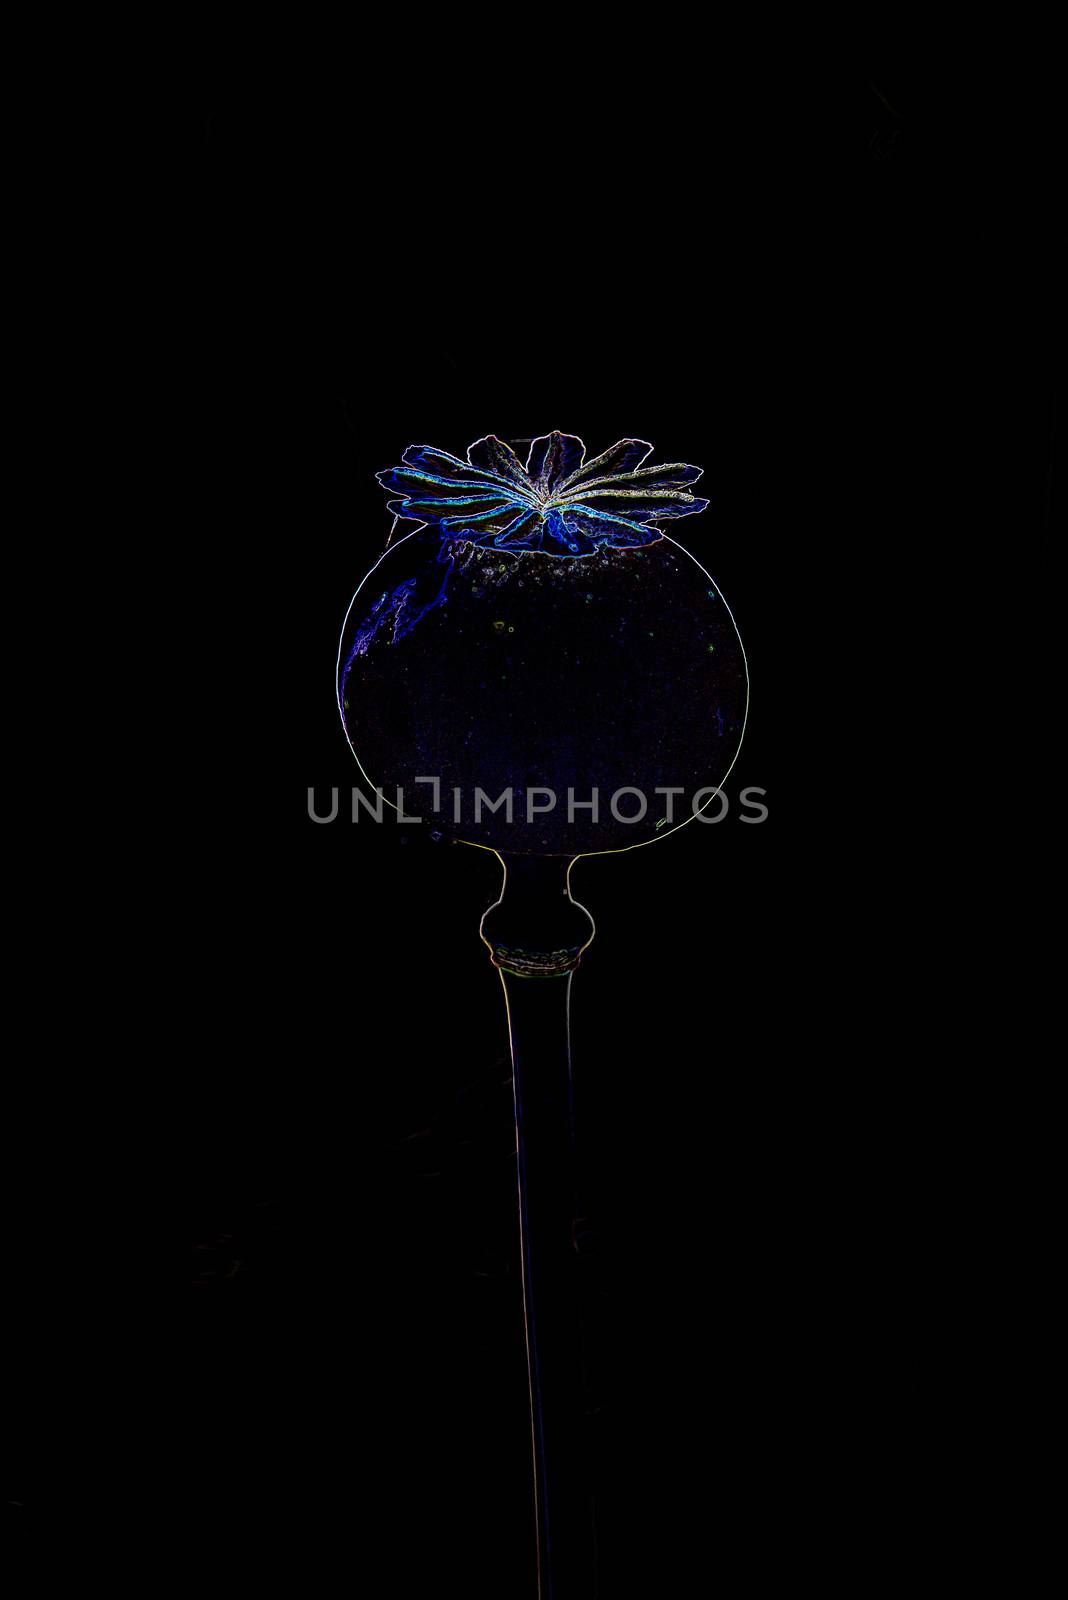 Opium poppy with capsule by Jochen